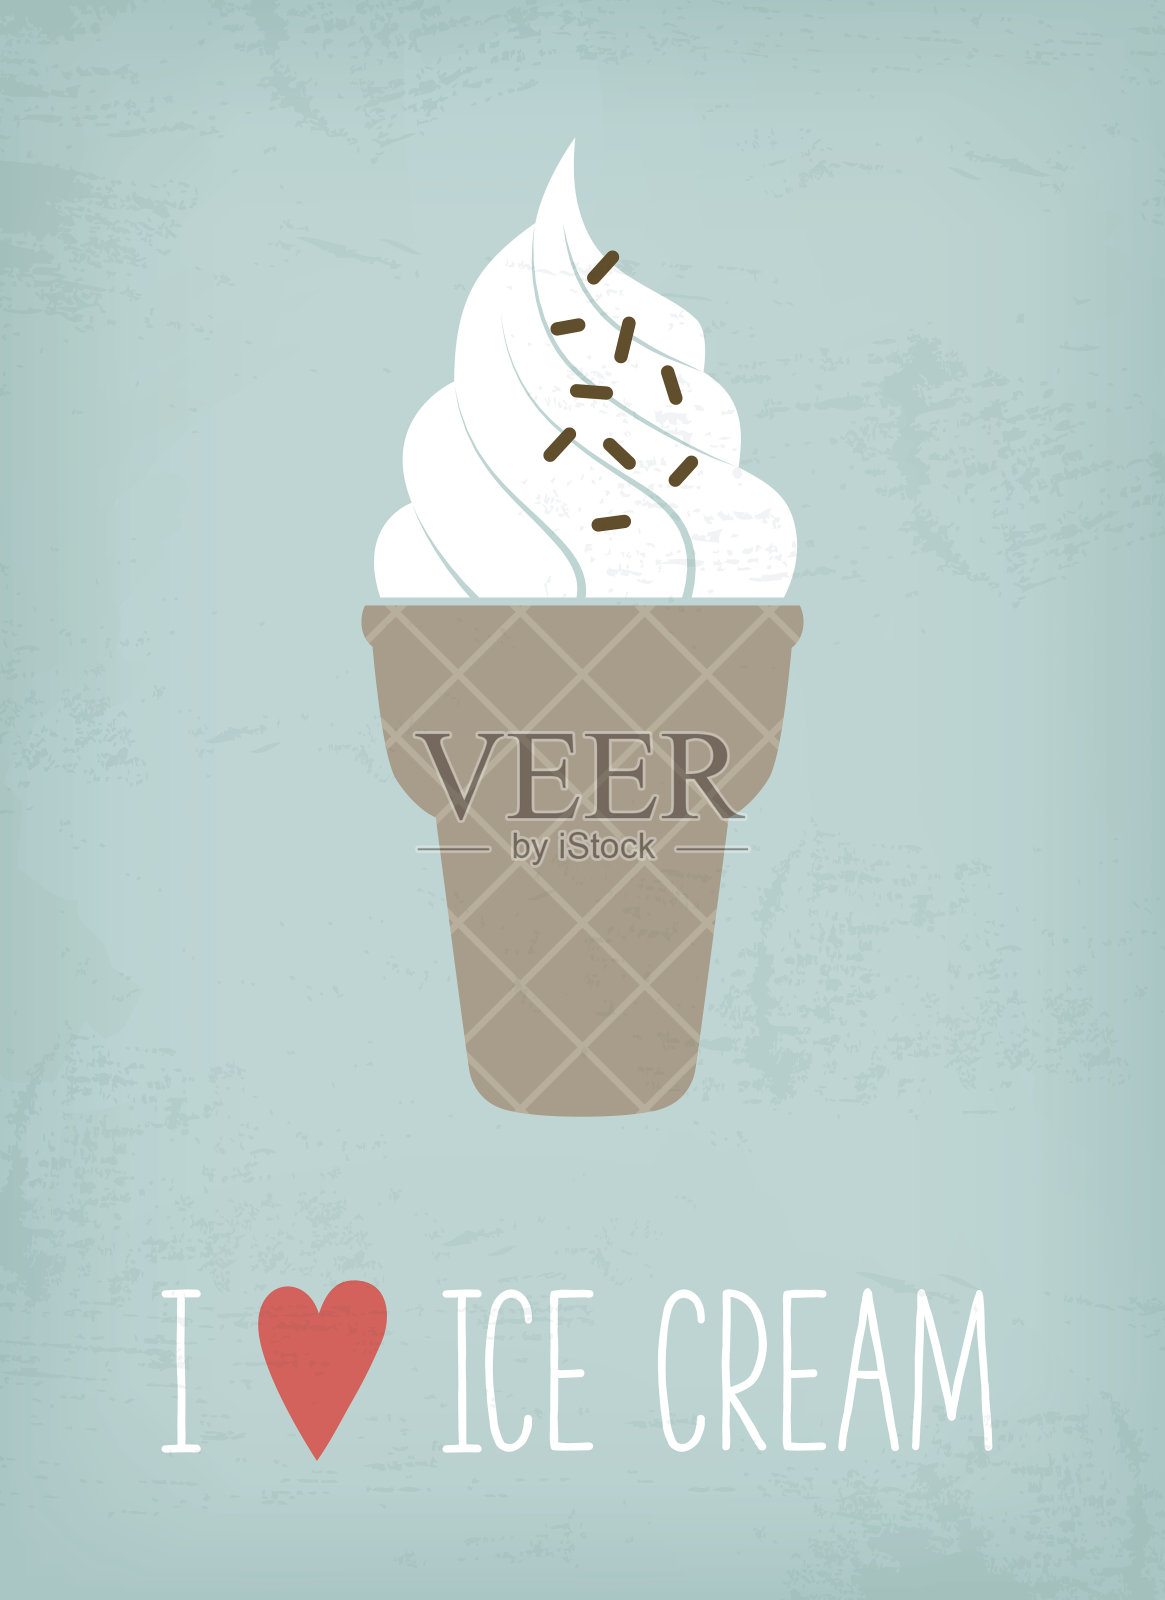 冰淇淋的海报设计元素图片